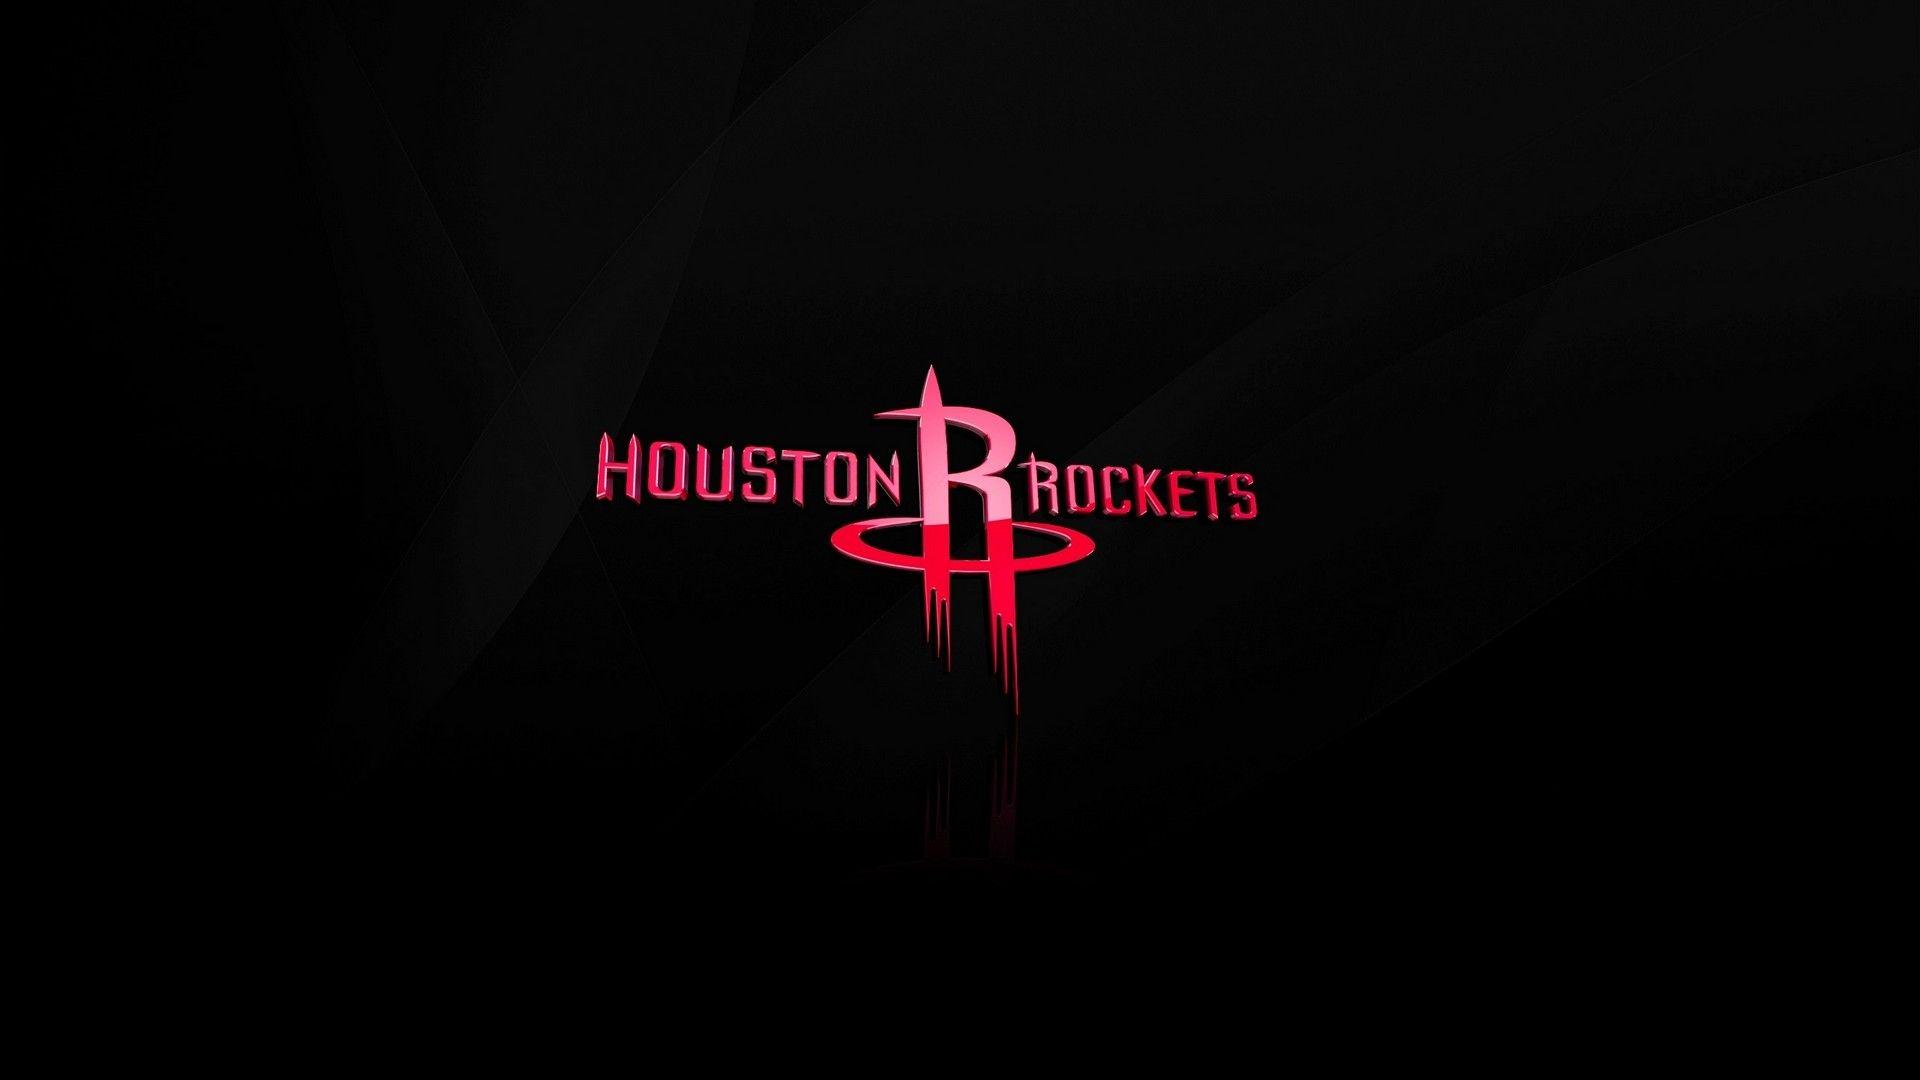 Basketball Wallpaper. Best Basketball Wallpaper 2020. Houston rockets, Rockets logo, Basketball wallpaper